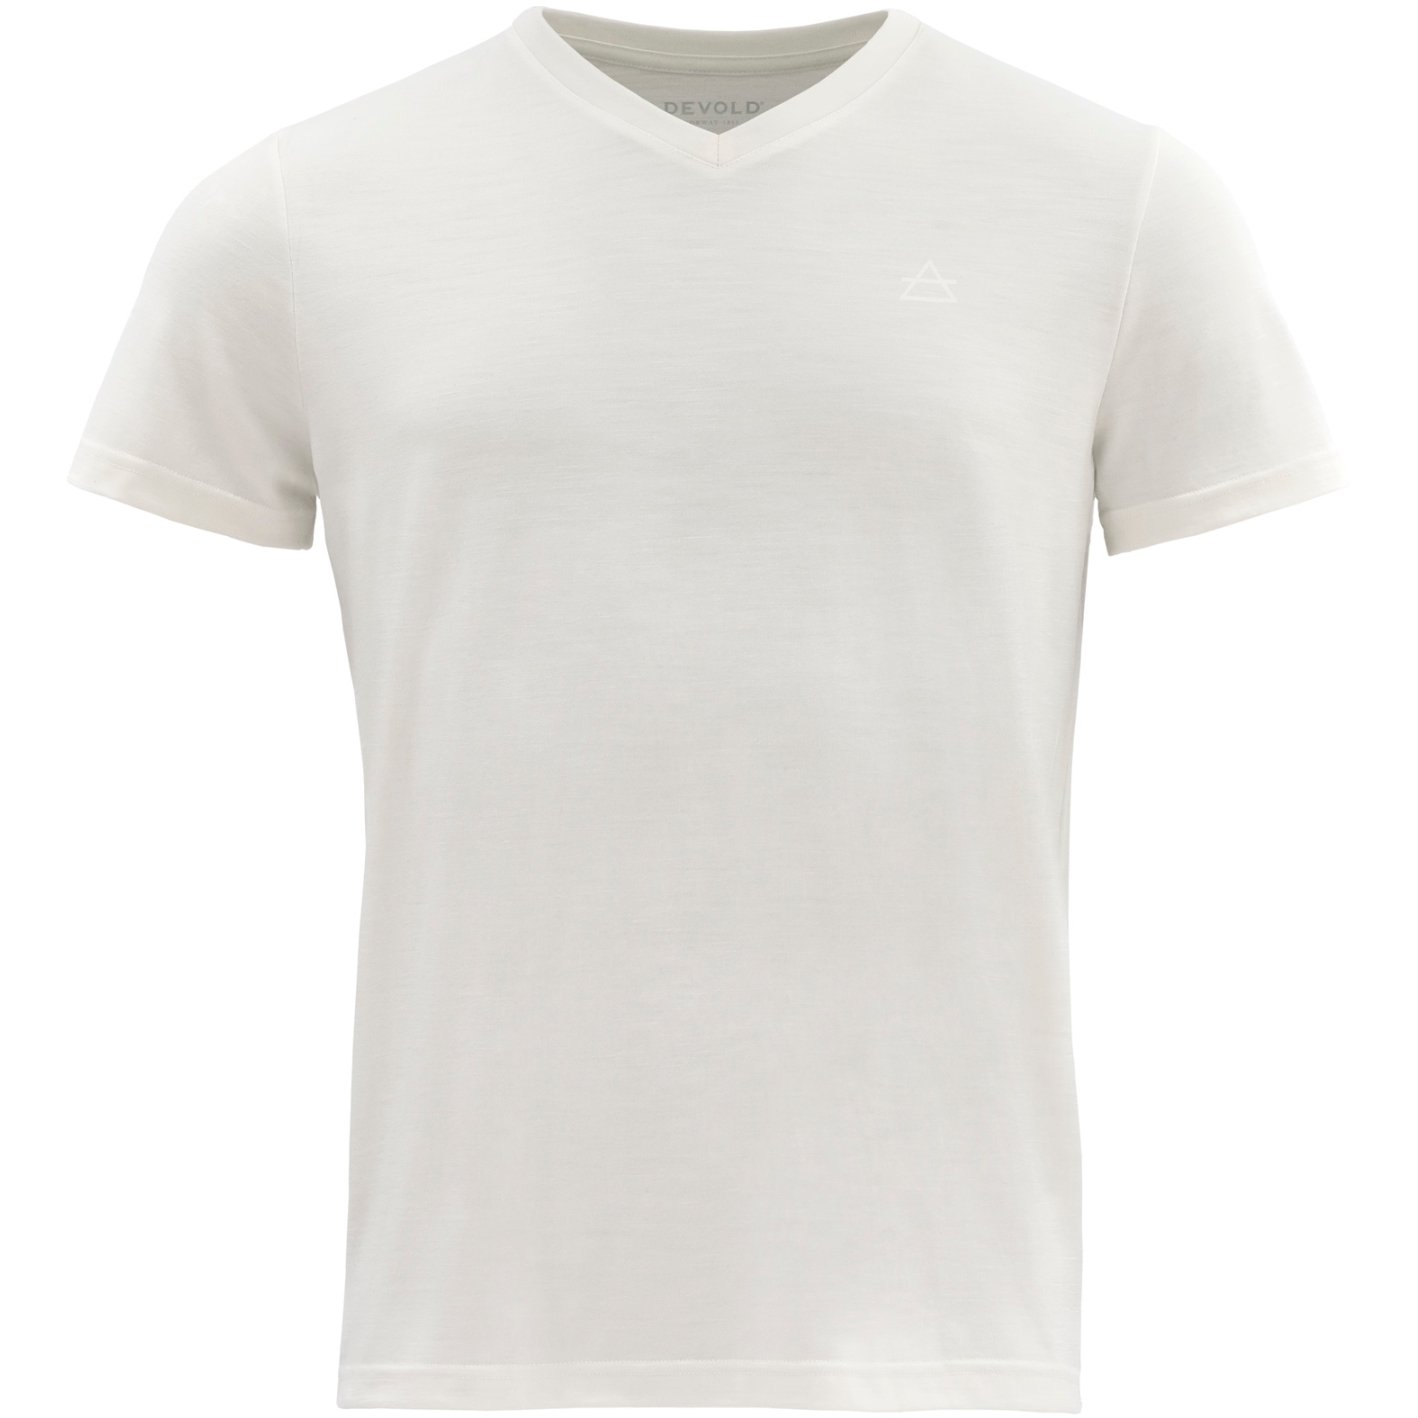 Produktbild von Devold Hareid Merino 200 T-Shirt V-Neck Herren - 001 Weiß